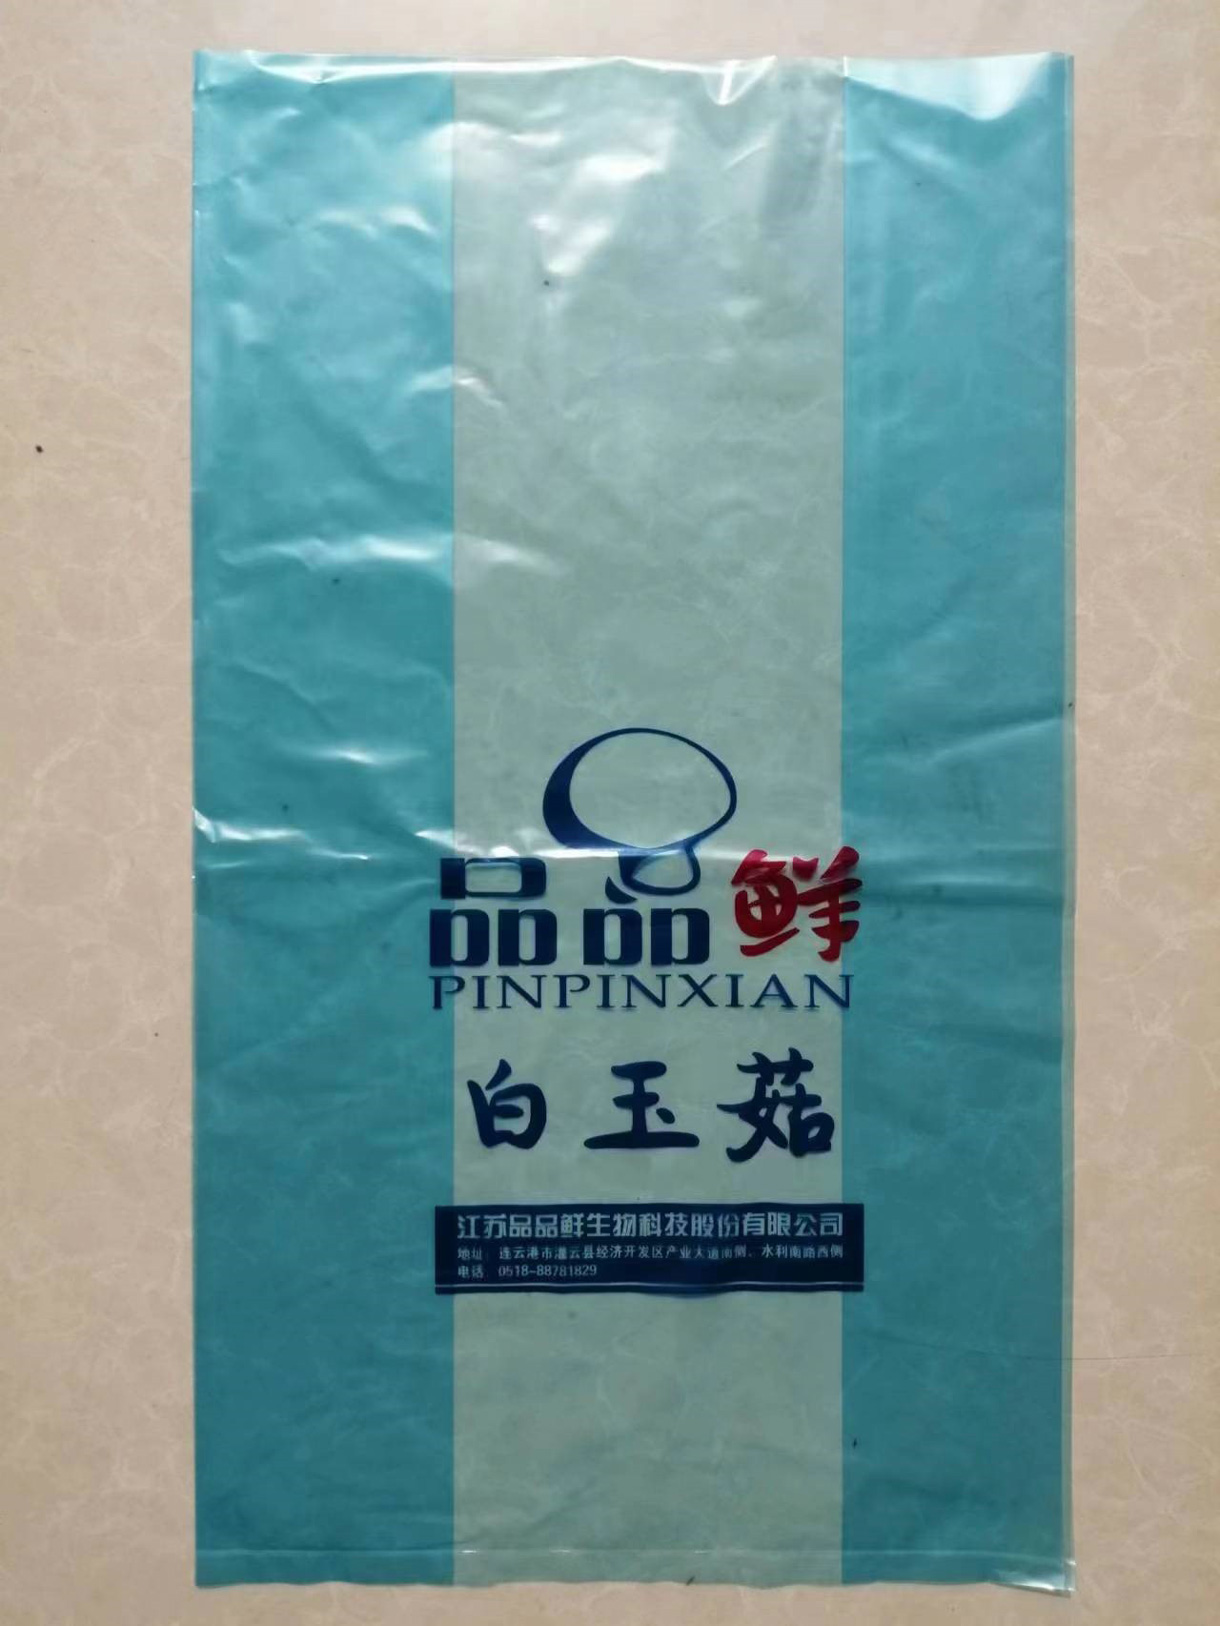 江苏金凯包装有限公司将亮相CIPPME上海国际包装展